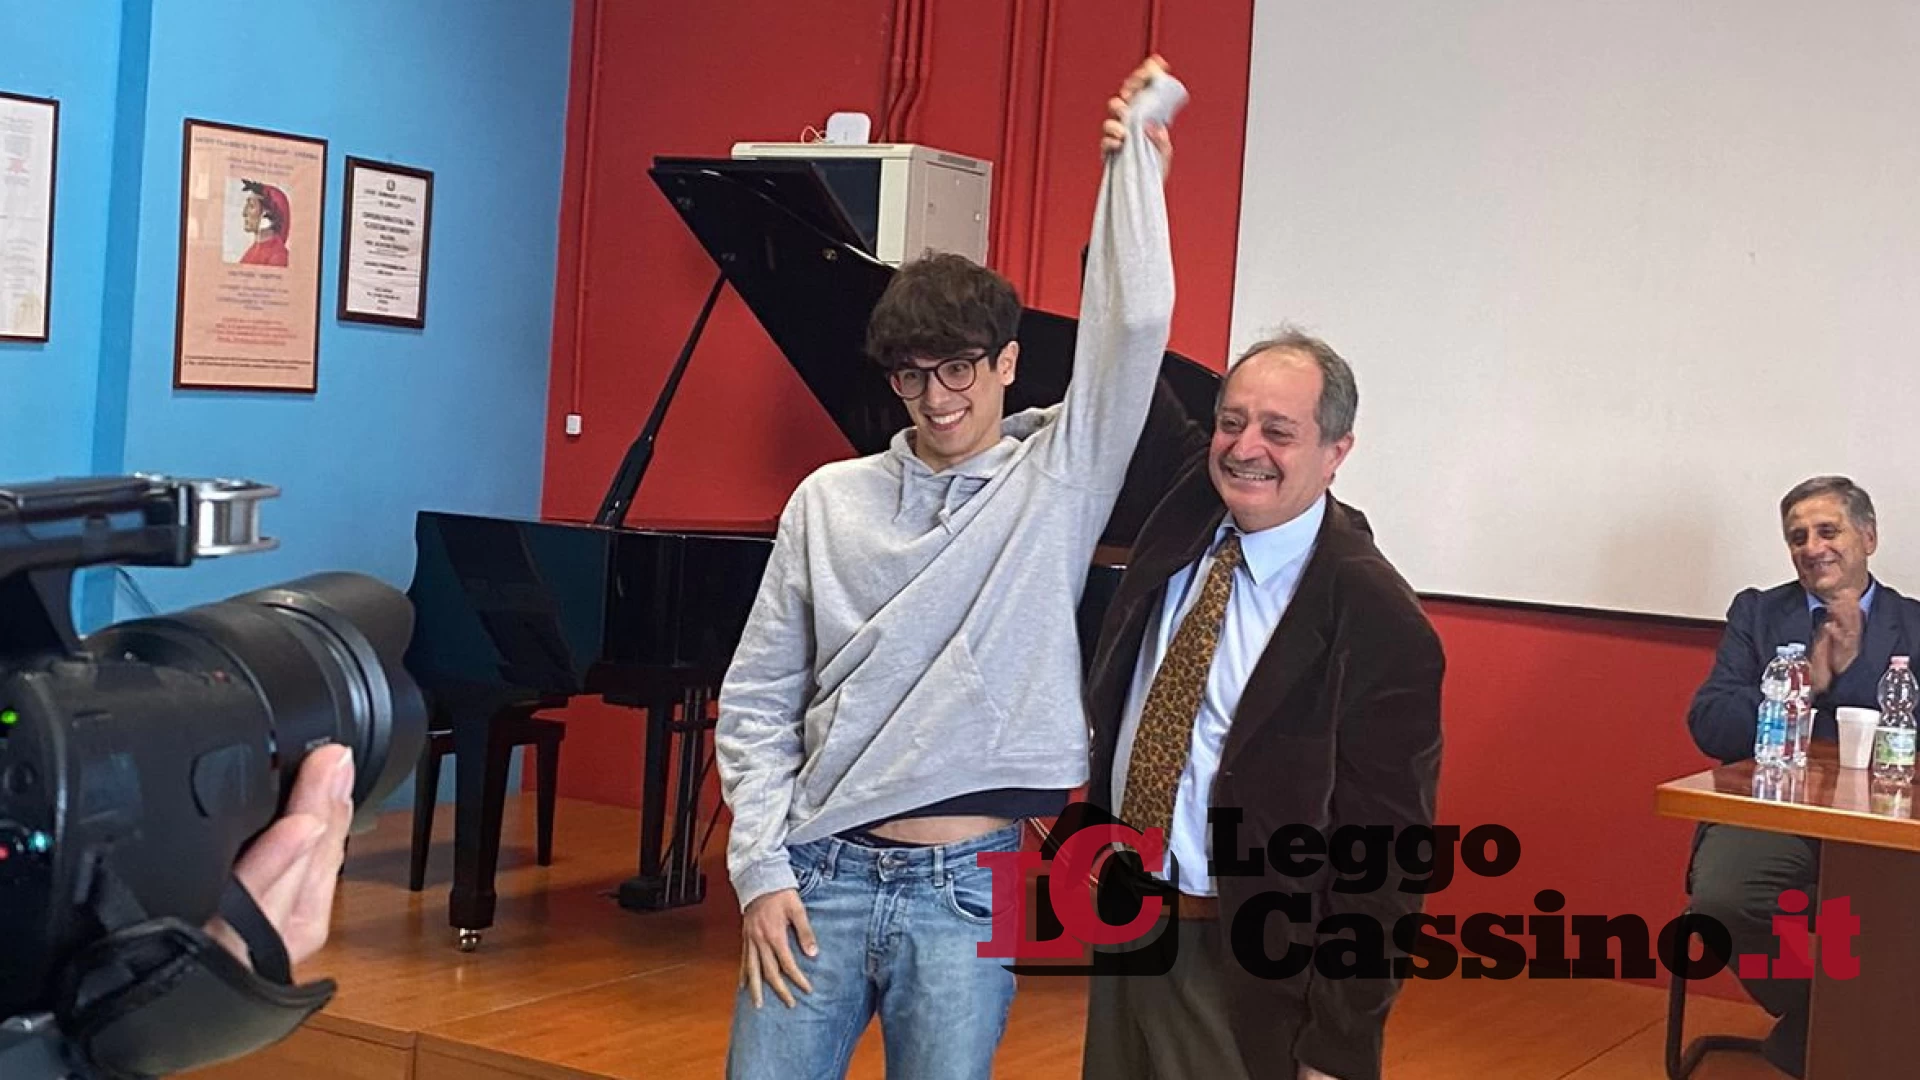 Michele Bosco, studente del Liceo Classico “Carducci” di Cassino, ha vinto il primo premio del Certamen Ciceronianum Normanno a Caserta